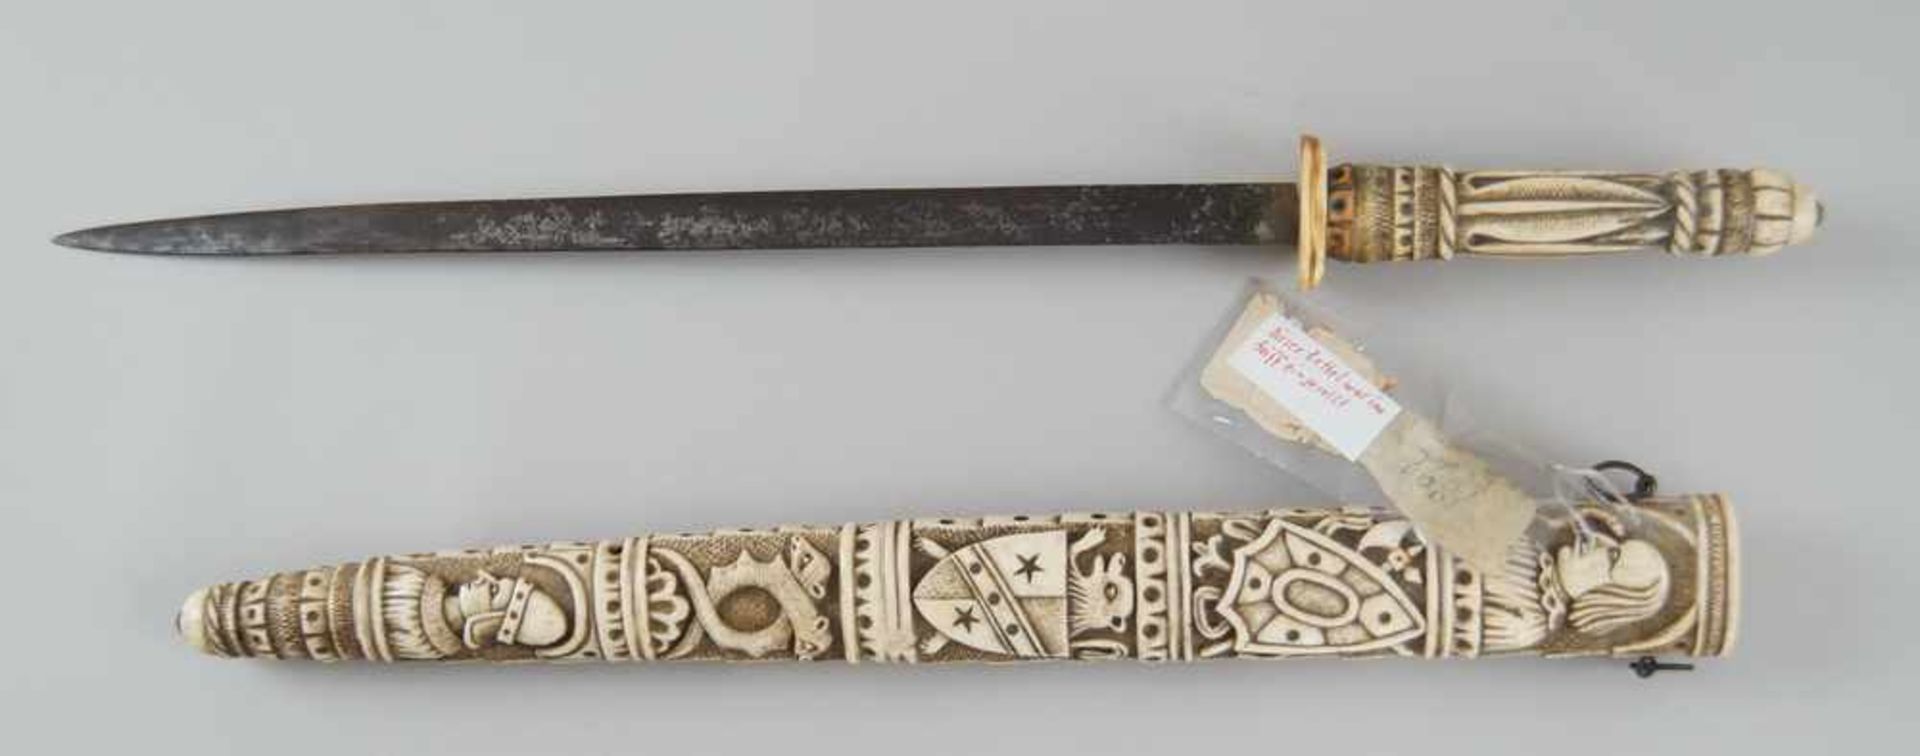 Schwert mit fein geschnitzter Scheide und Griff aus Elfenbein, Klinge aus Eisen, 19. JH,mit Zettel